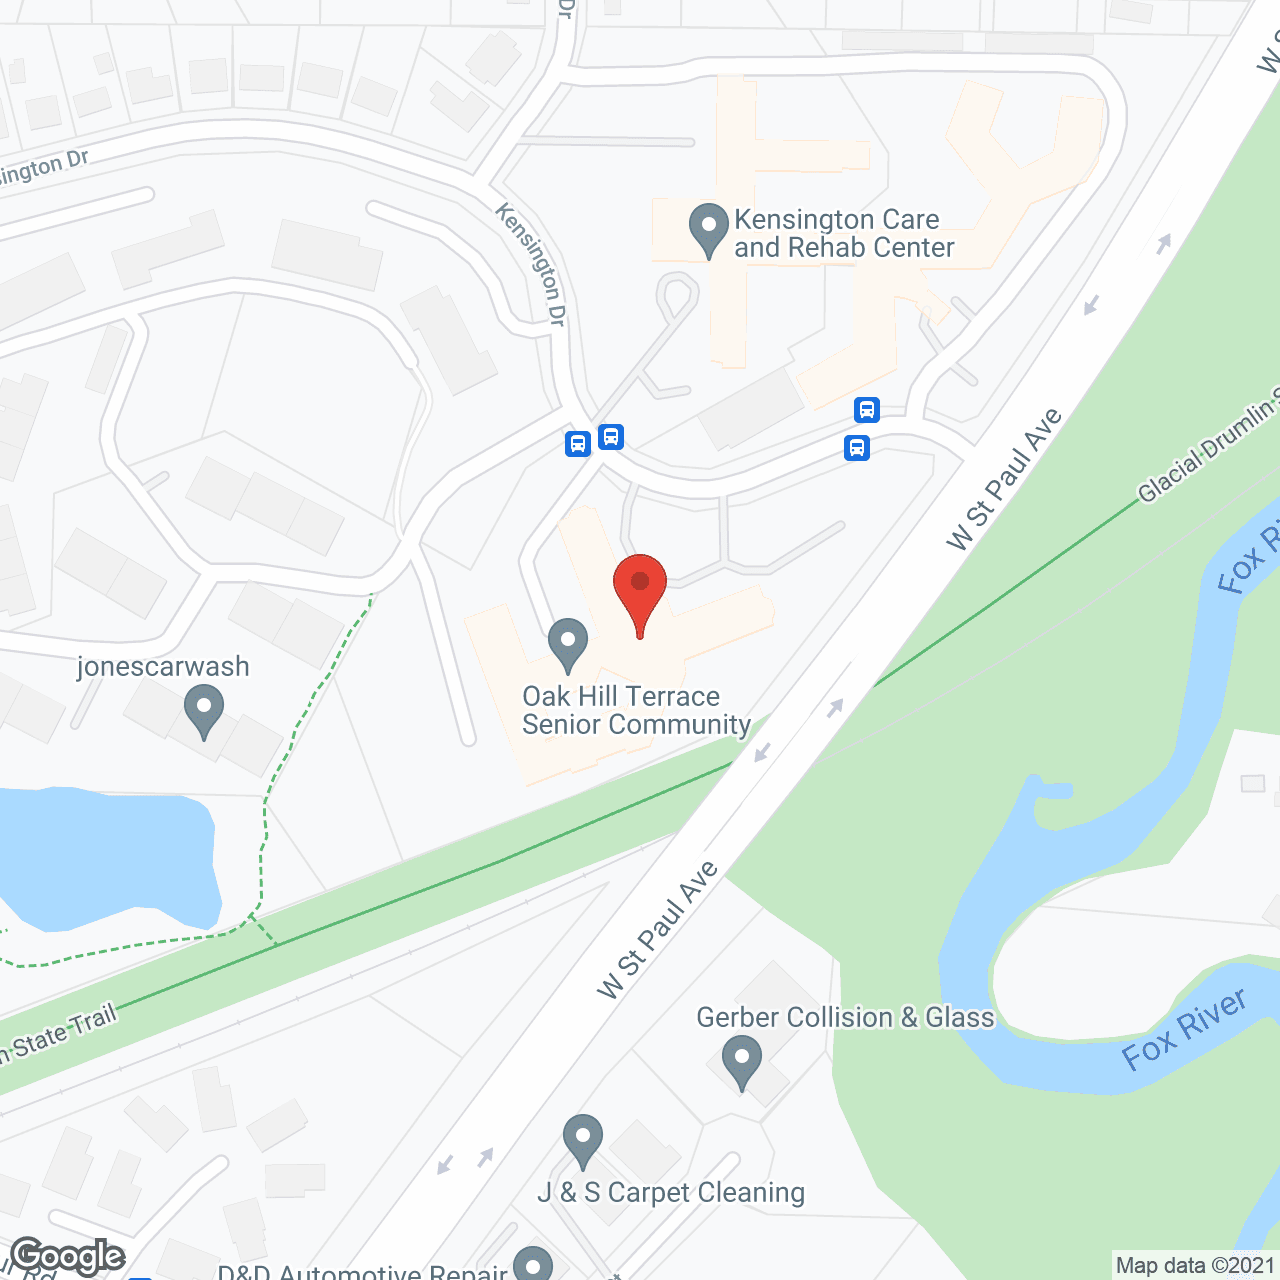 Oak Hill Terrace in google map